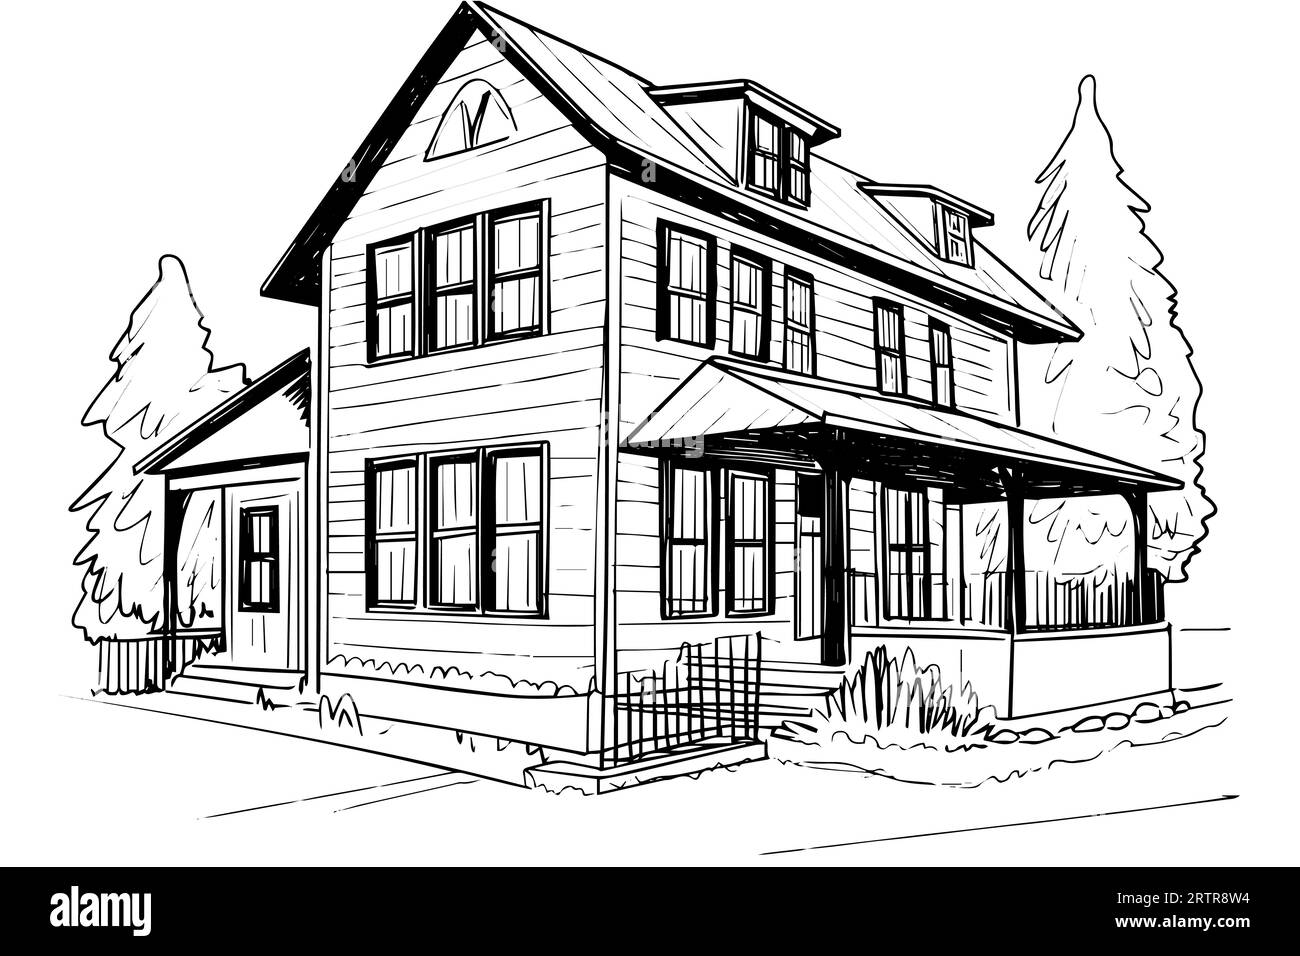 Schizzo vettoriale in bianco e nero di una casa in legno d'epoca. Illustrazione dello stile di incisione. Illustrazione Vettoriale